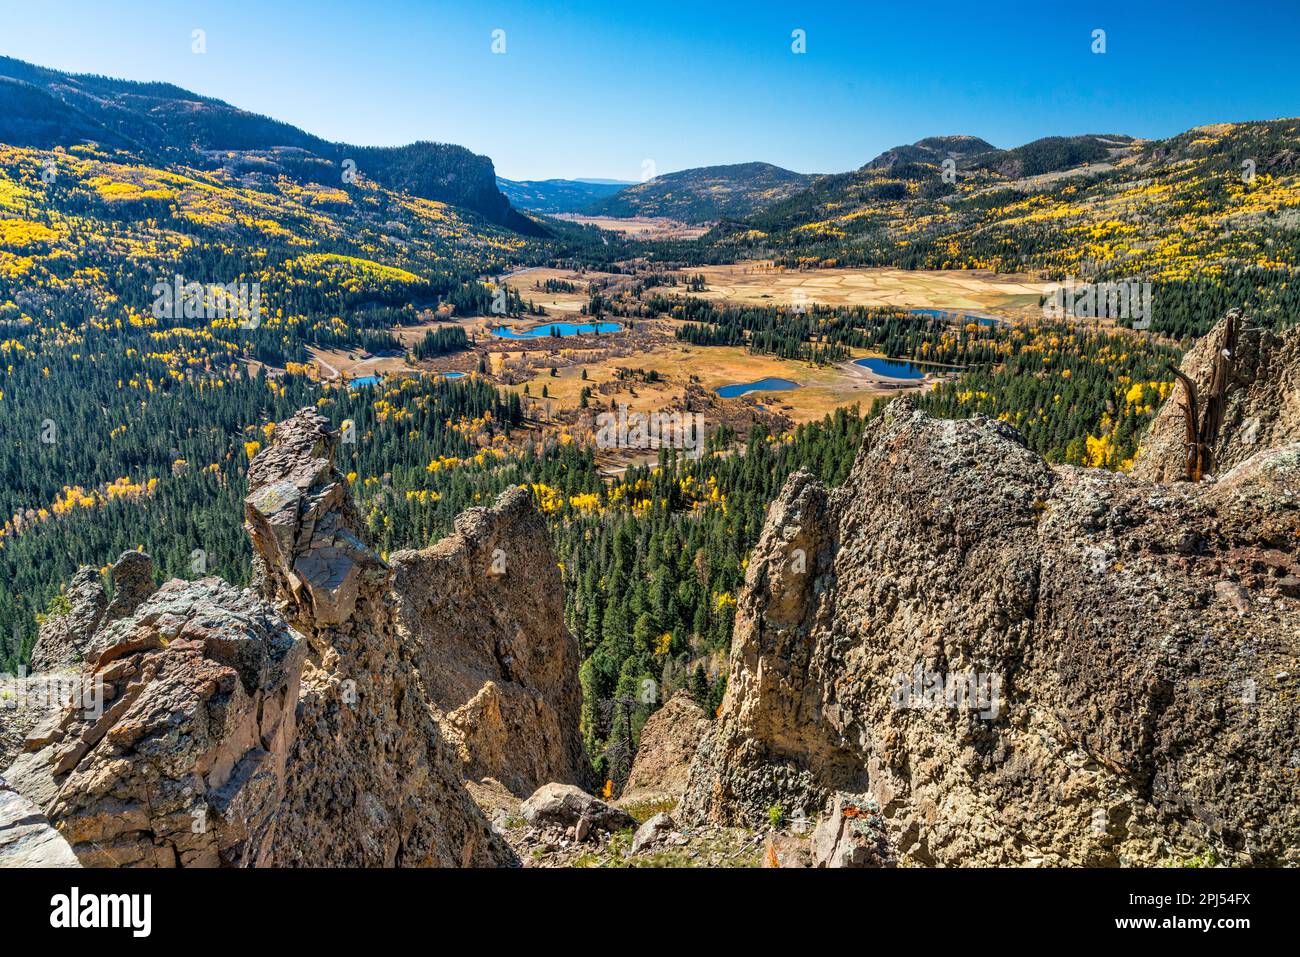 Valle del Río San Juan, rocas metamórficas en el mirador debajo del Paso Wolf Creek, finales del otoño, US 160, cerca de Pagosa Springs, Montañas San Juan, Colorado, EE.UU Foto de stock